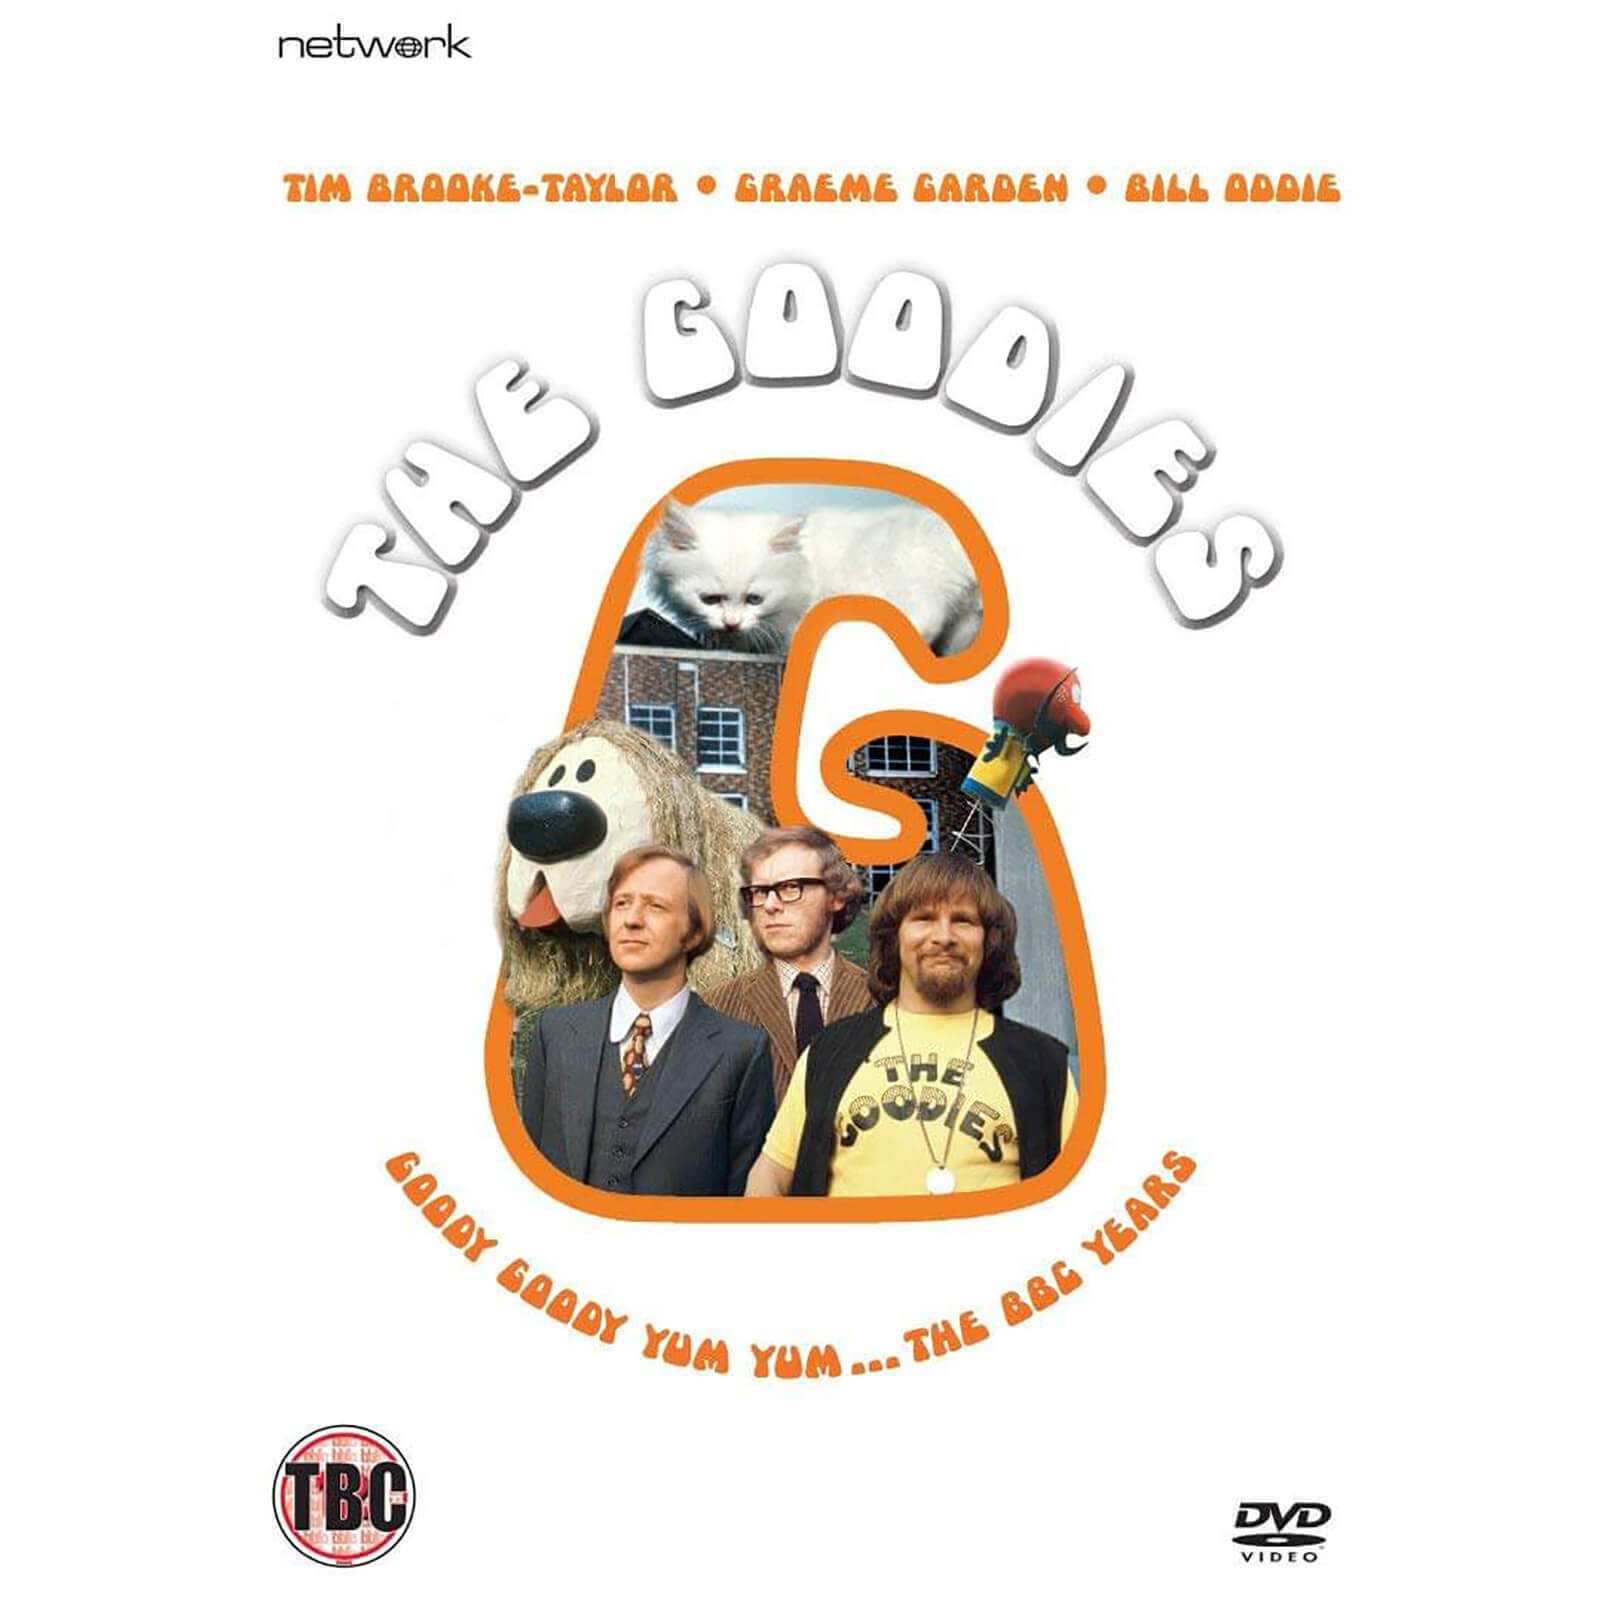 Die Goodies: Die komplette BBC-Sammlung von Network